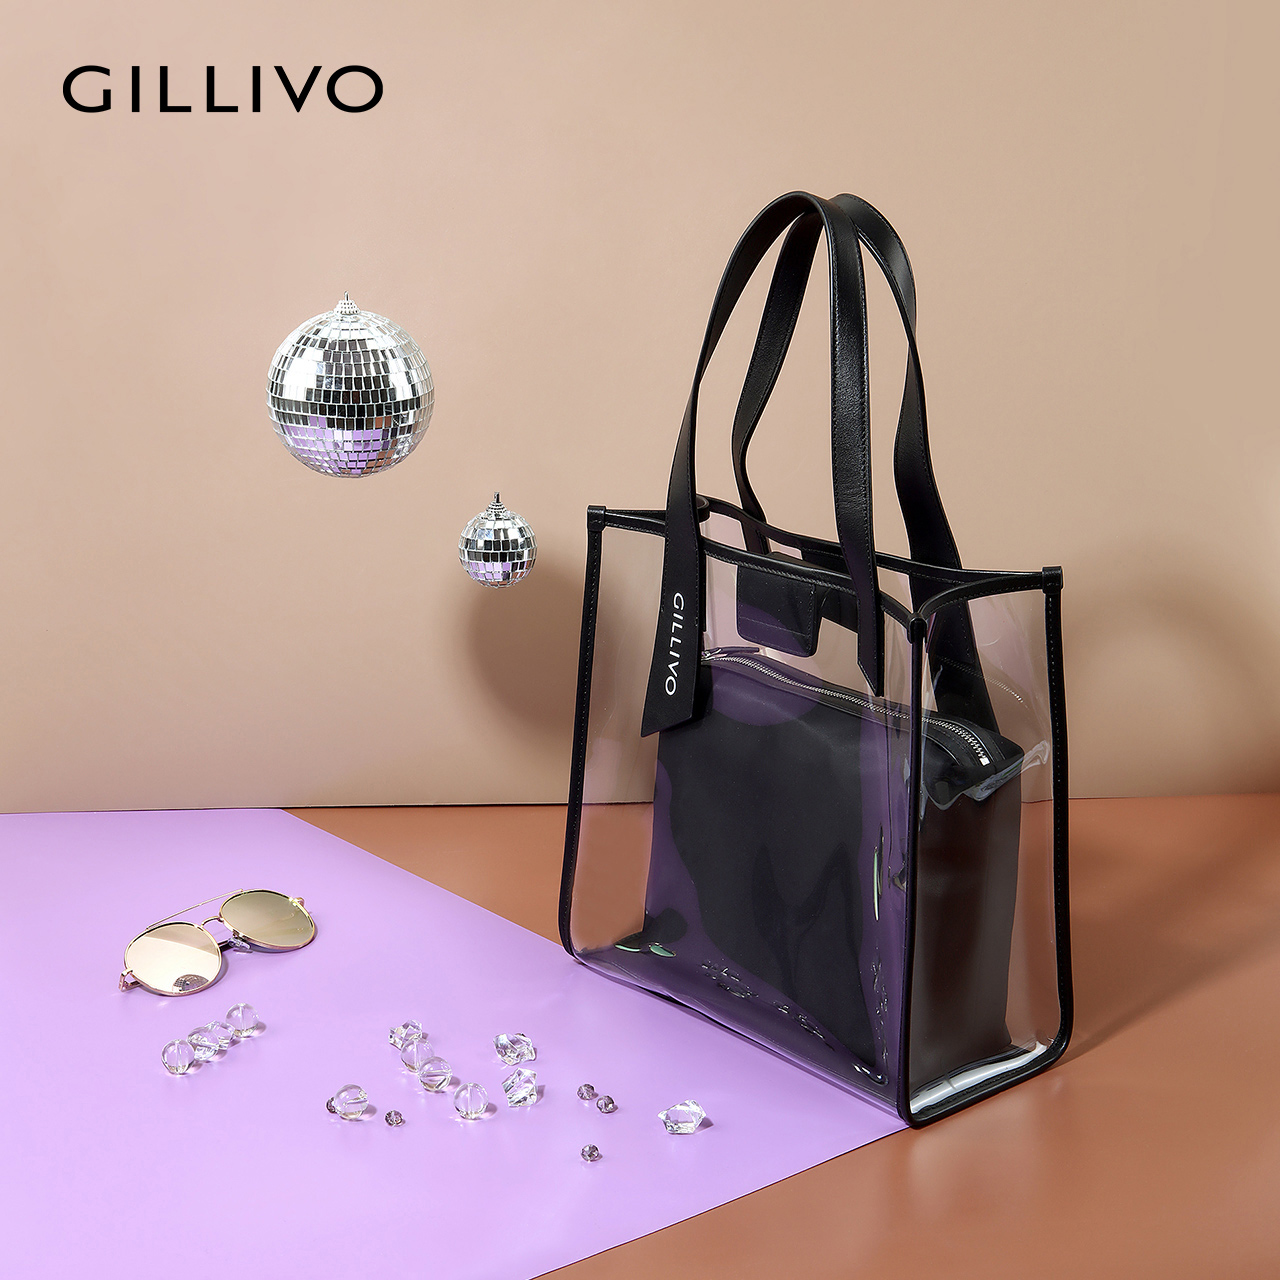 Gillivo嘉里奥欧美时尚女单肩包手提包 2019新款透明果冻购物袋